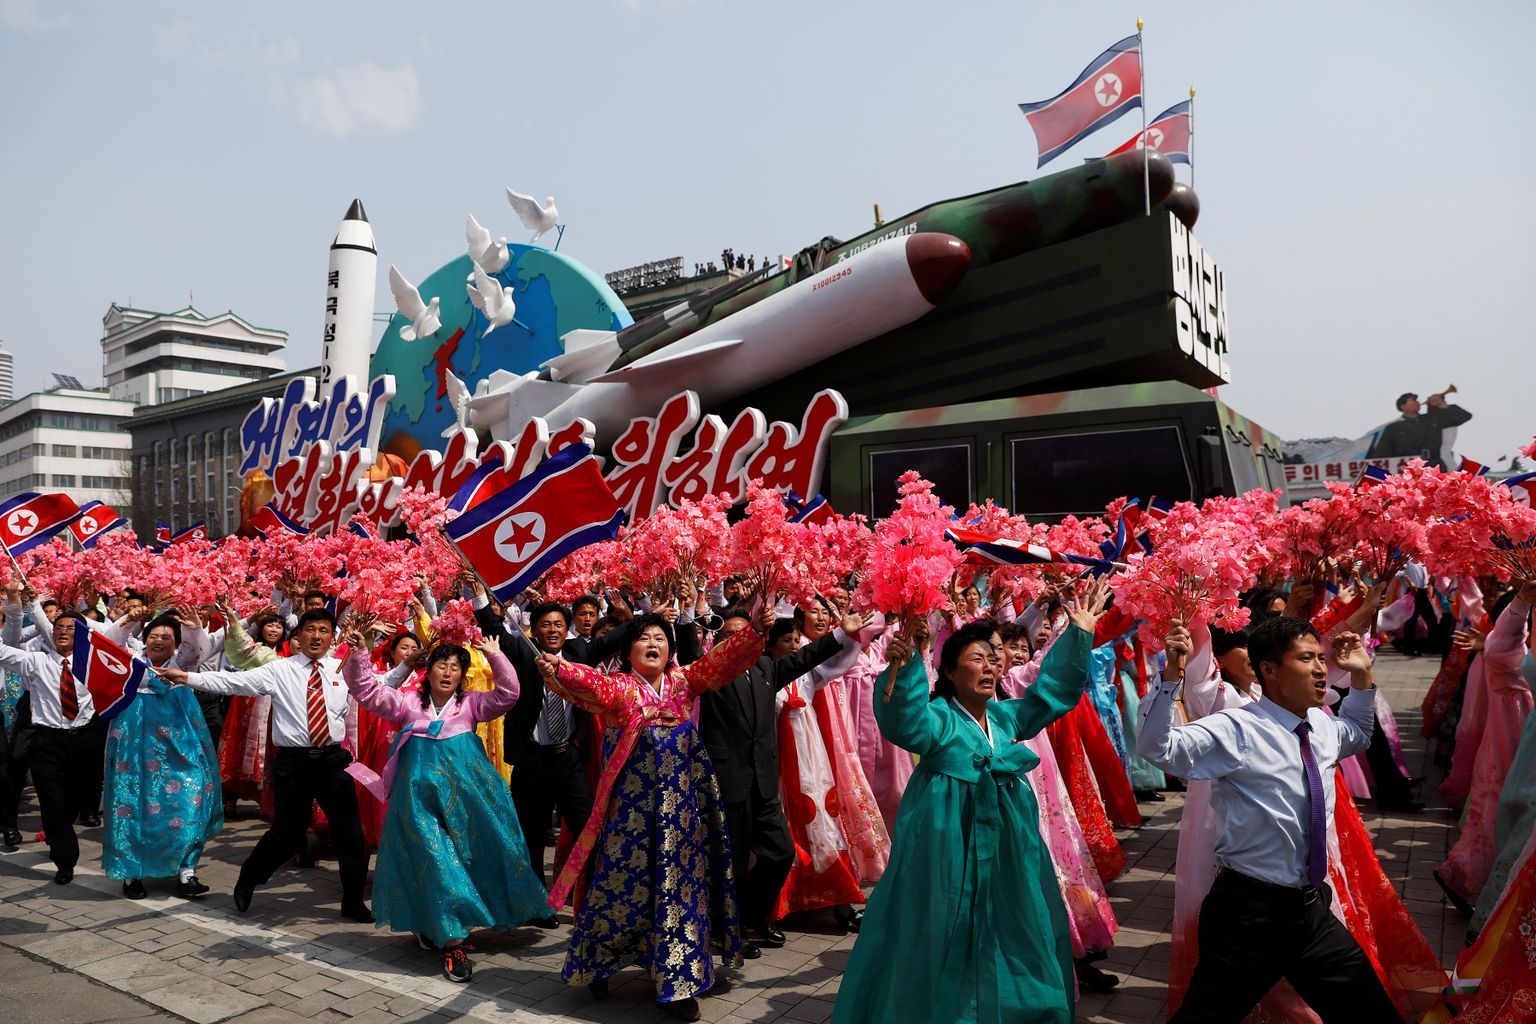 Põhja-Koreas toimus nädalavahetusel suur sõjaväeparaad, millega tähistati riigi looja Kim Il-Sung 105. sünniaastapäeva.